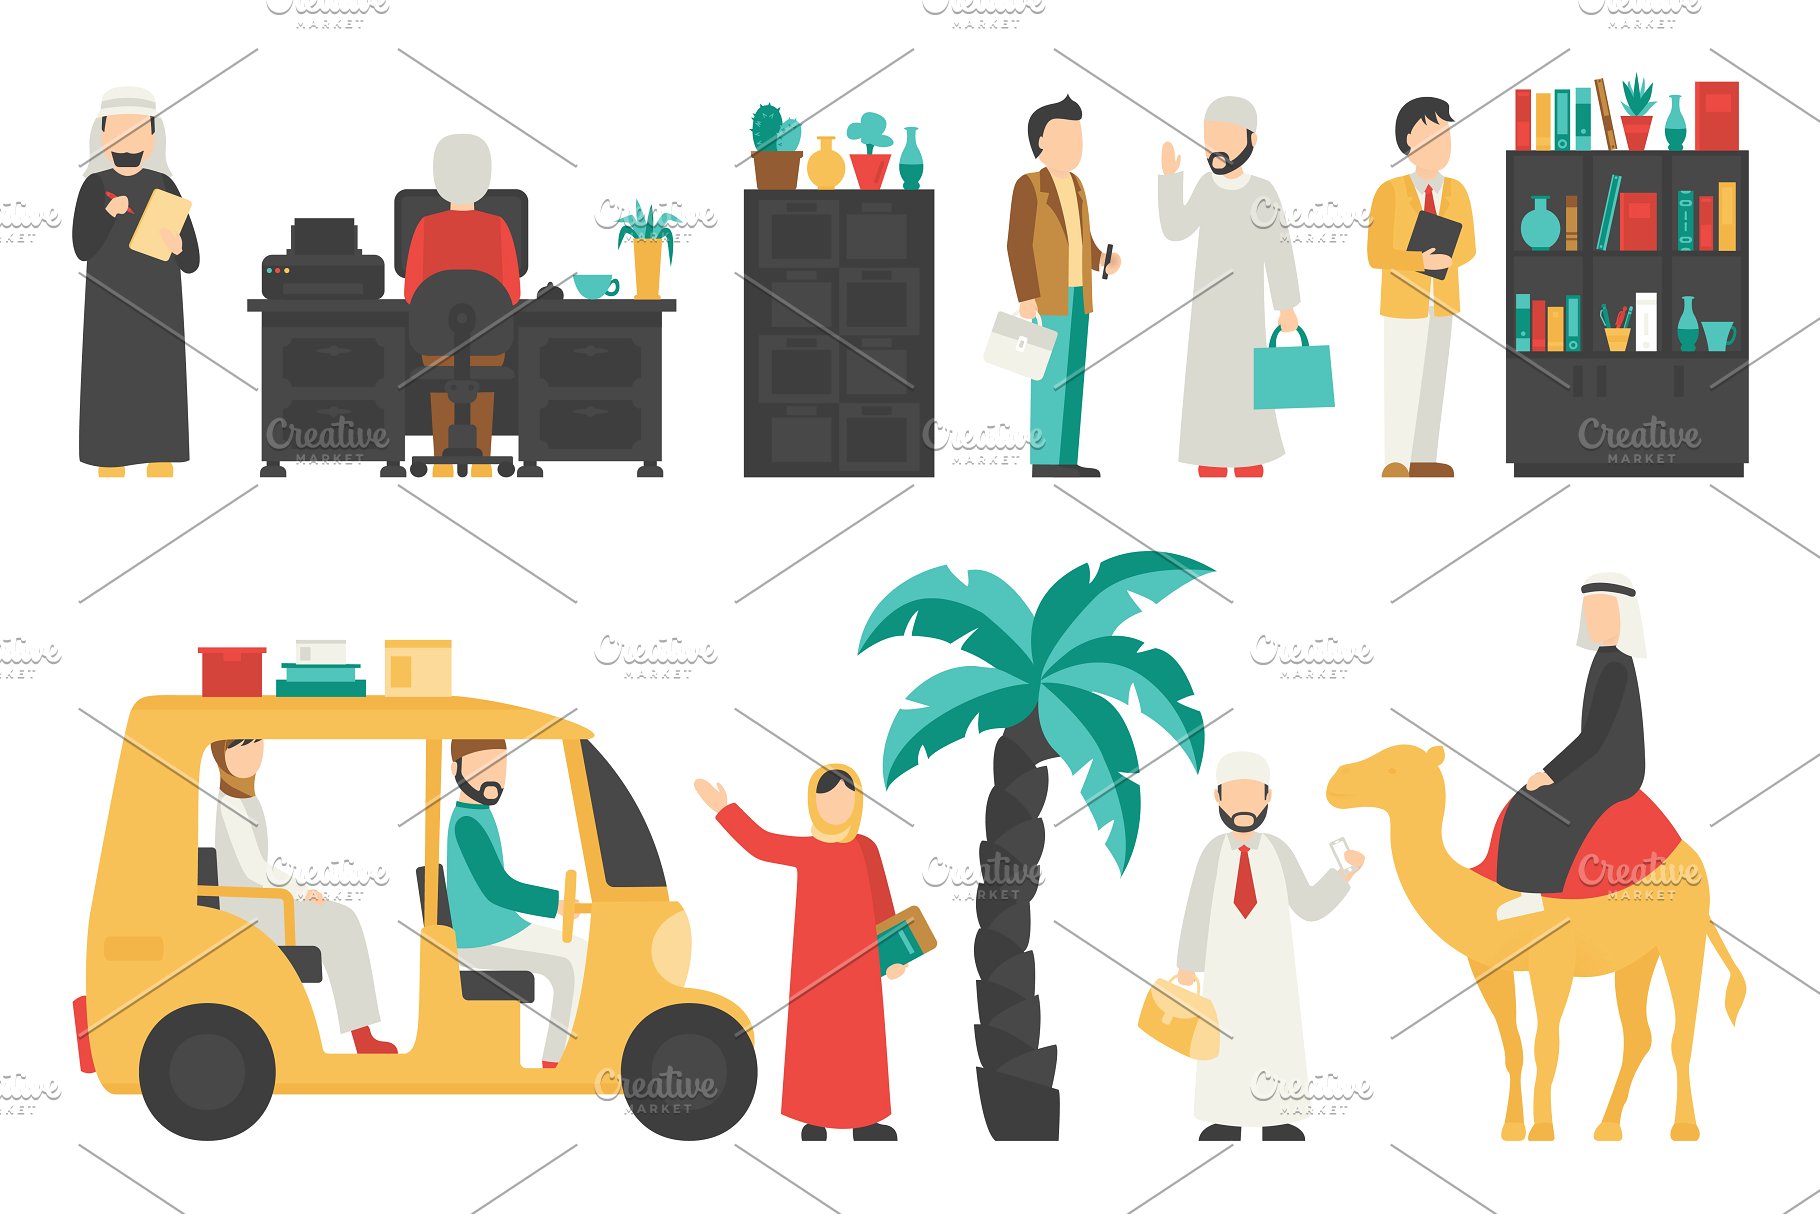 迪拜人物风情扁平化设计插画 Dubai – flat people set插图(14)